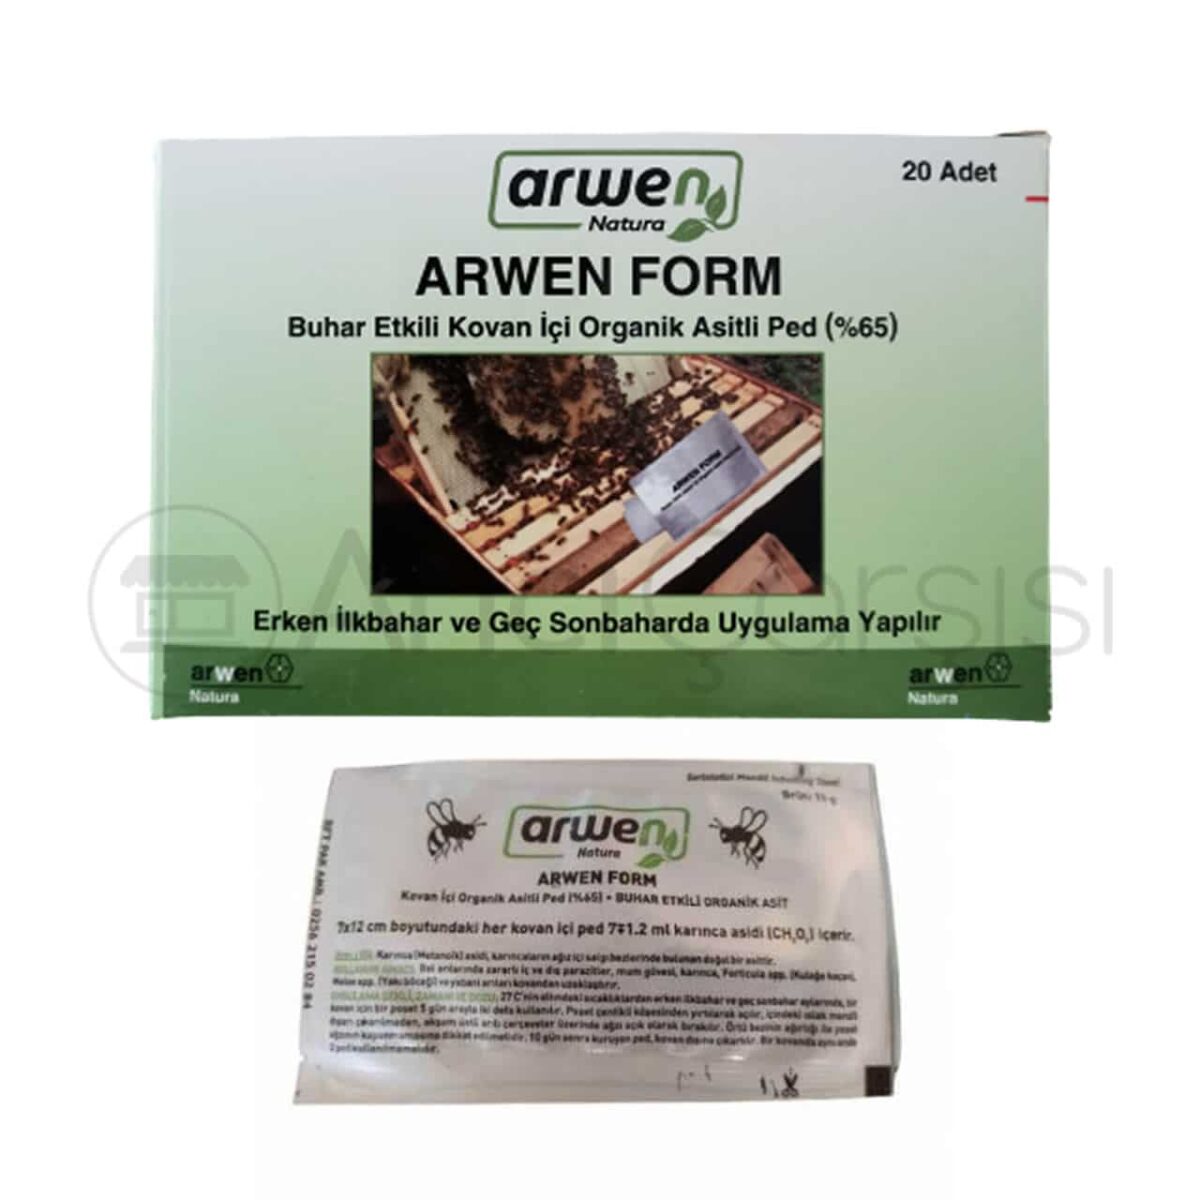 arwen form - buhar etkili kovan i̇çi organik asitli ped (20'li)